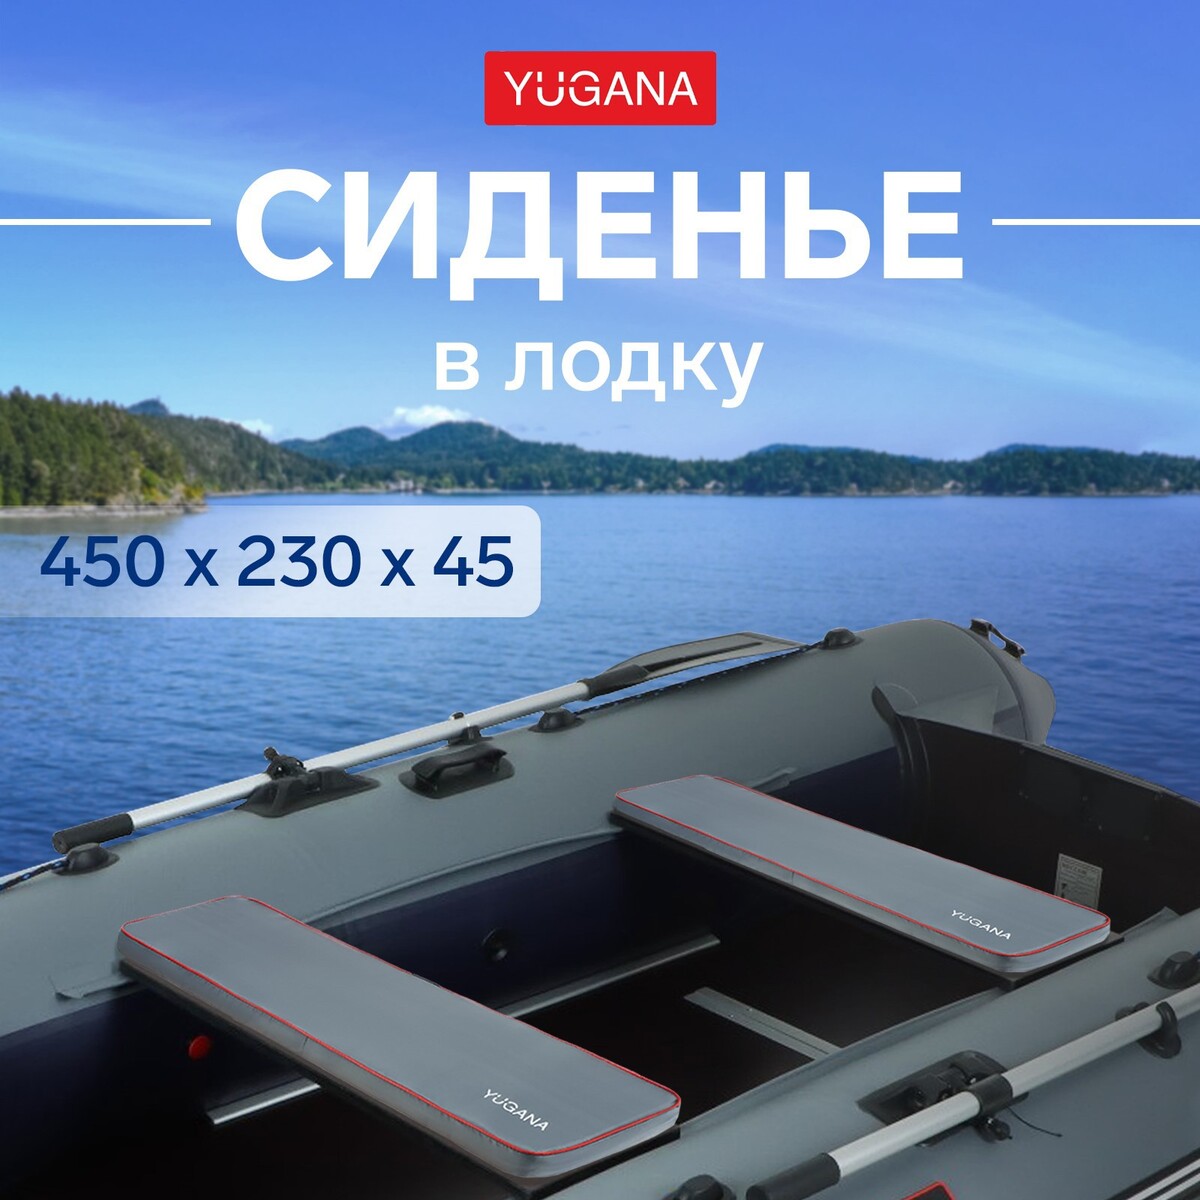 Сиденье в лодку yugana, цвет серый, 450 x 230 x 45 мм сиденье для унитаза с крышкой 43×37 см мягкое серый рисунок микс